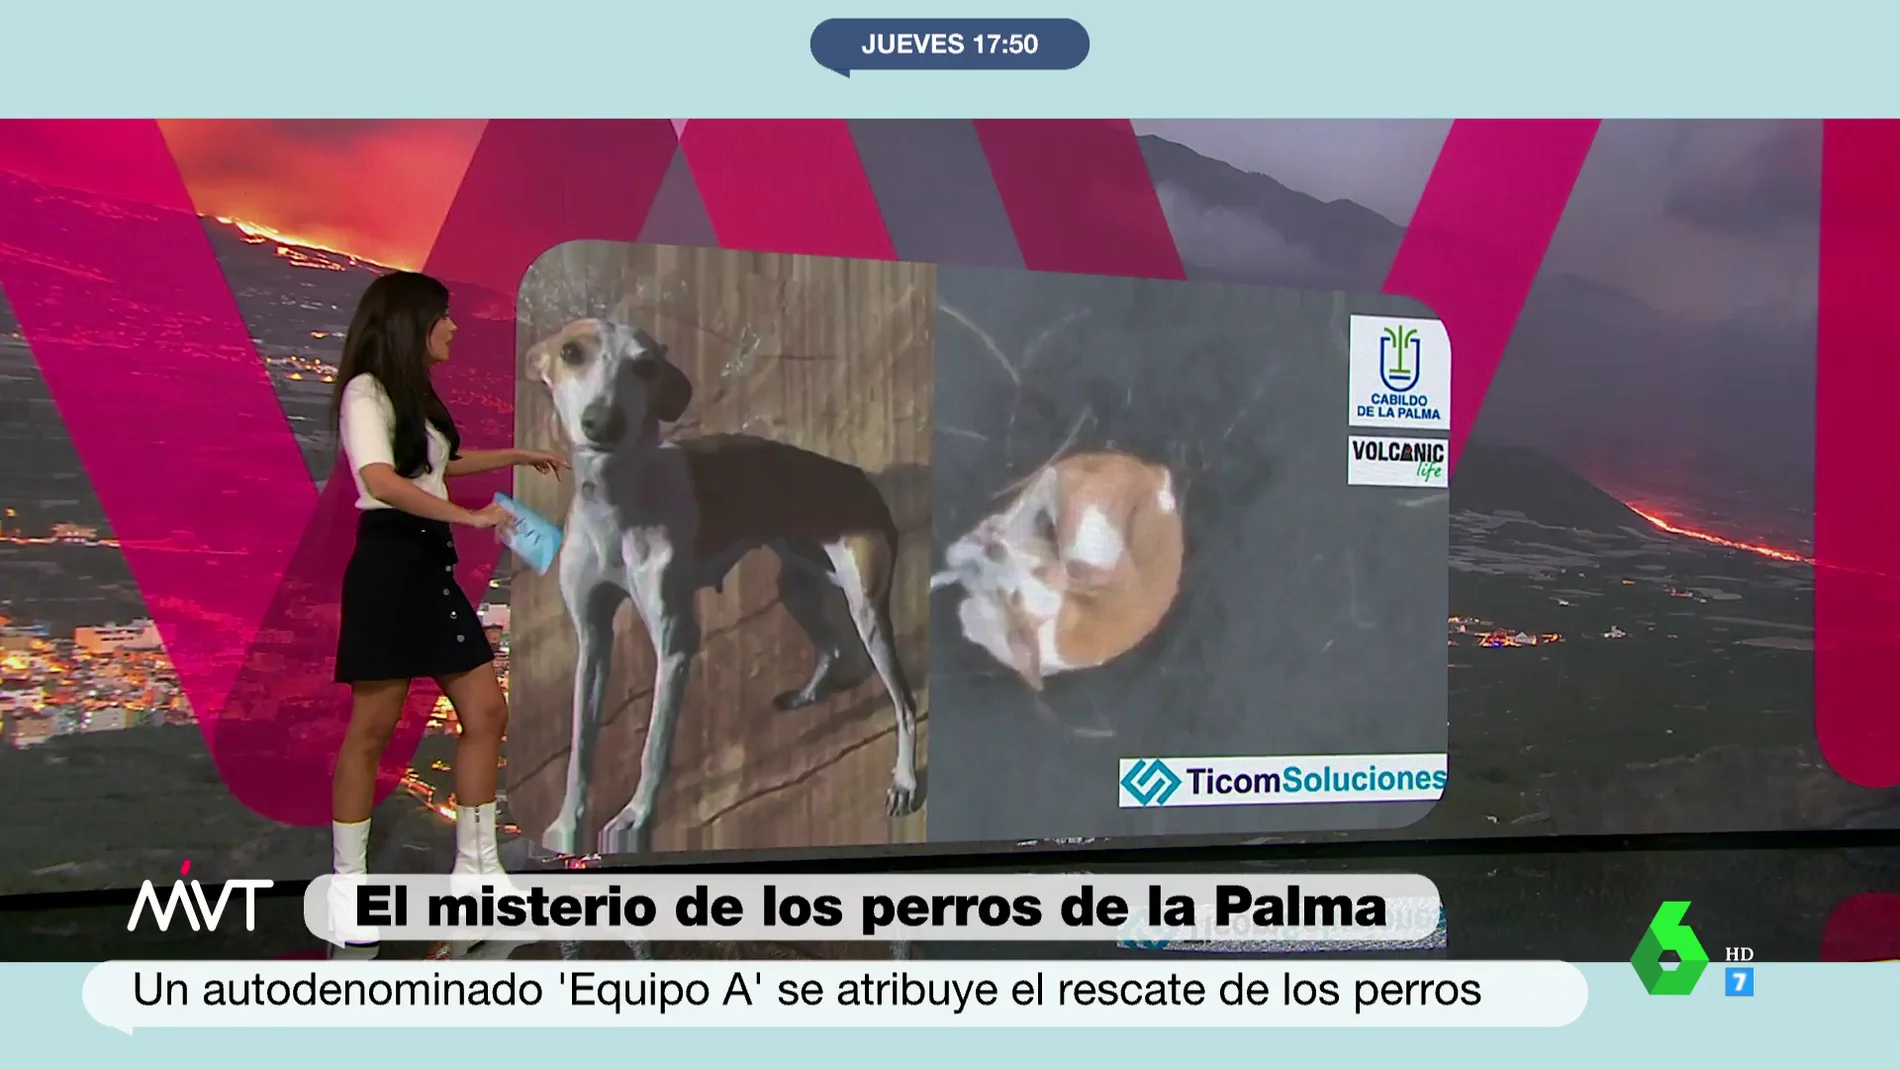 Esto es todo lo que se sabe de la misteriosa desaparición de los perros de La Palma